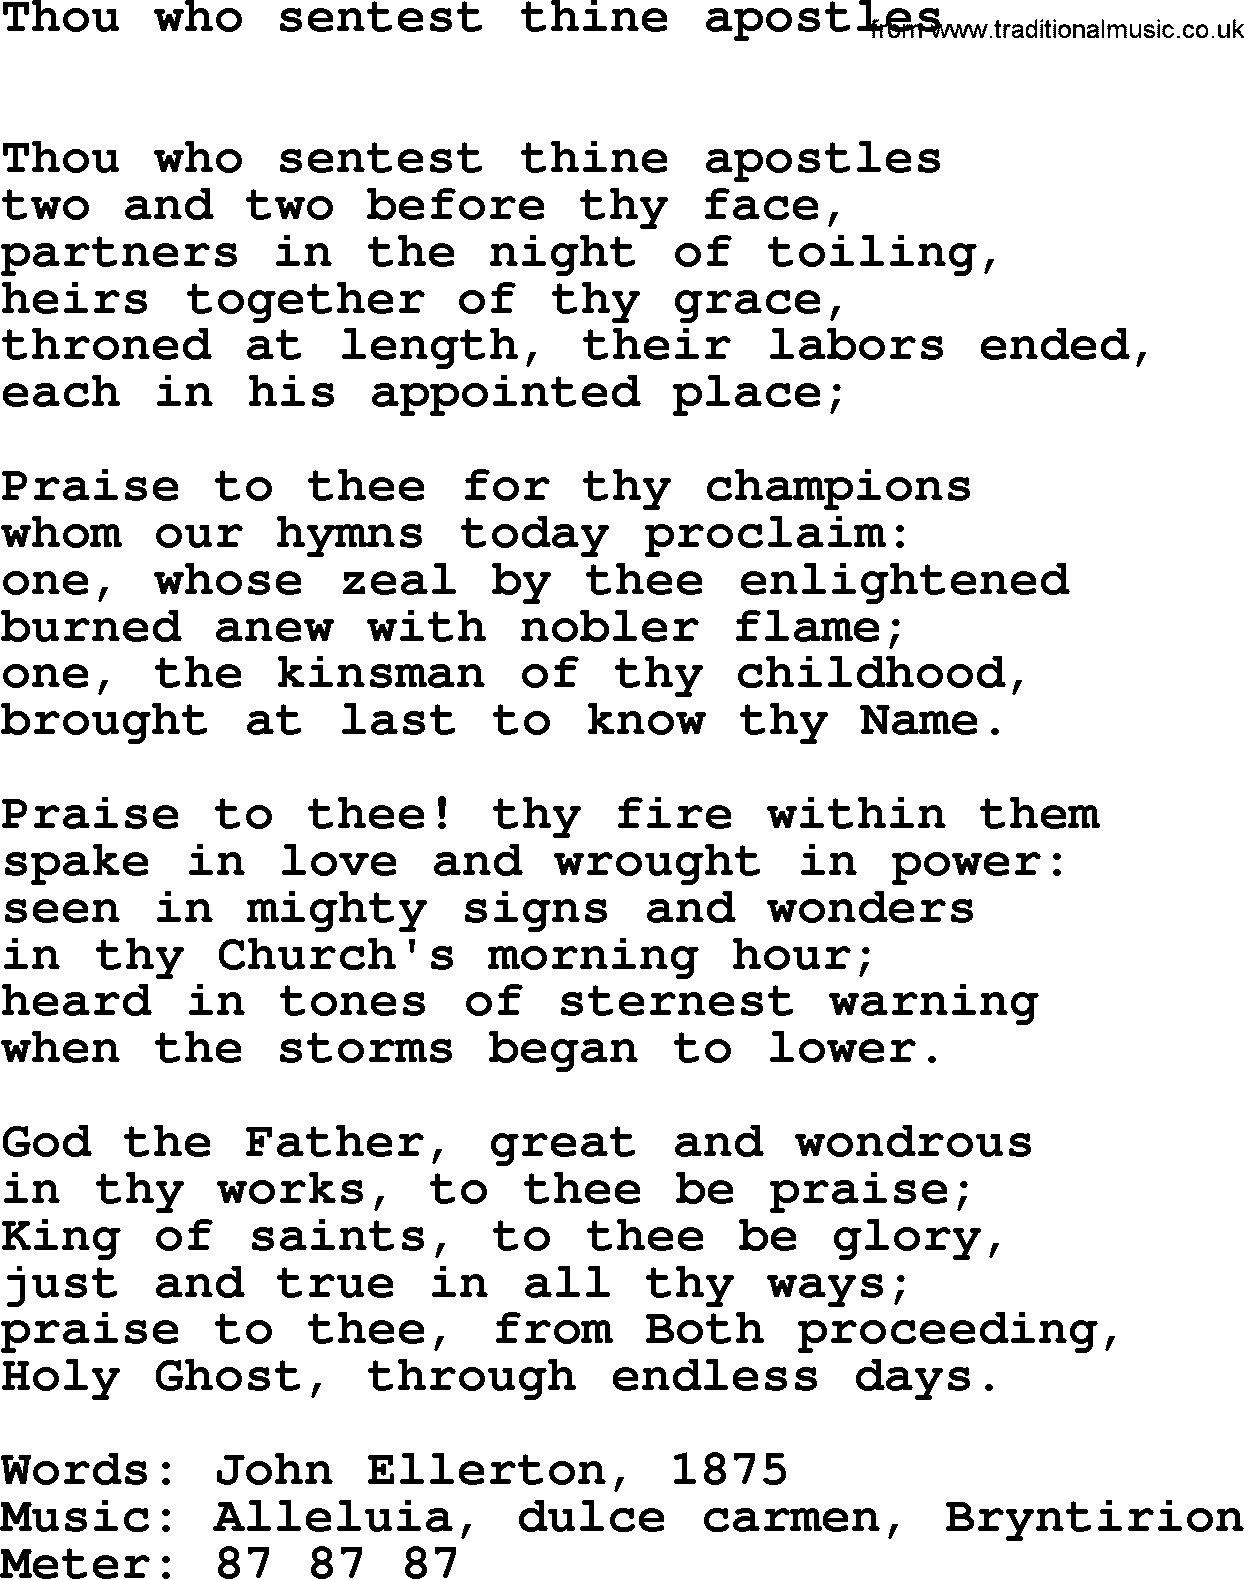 Book of Common Praise Hymn: Thou Who Sentest Thine Apostles.txt lyrics with midi music